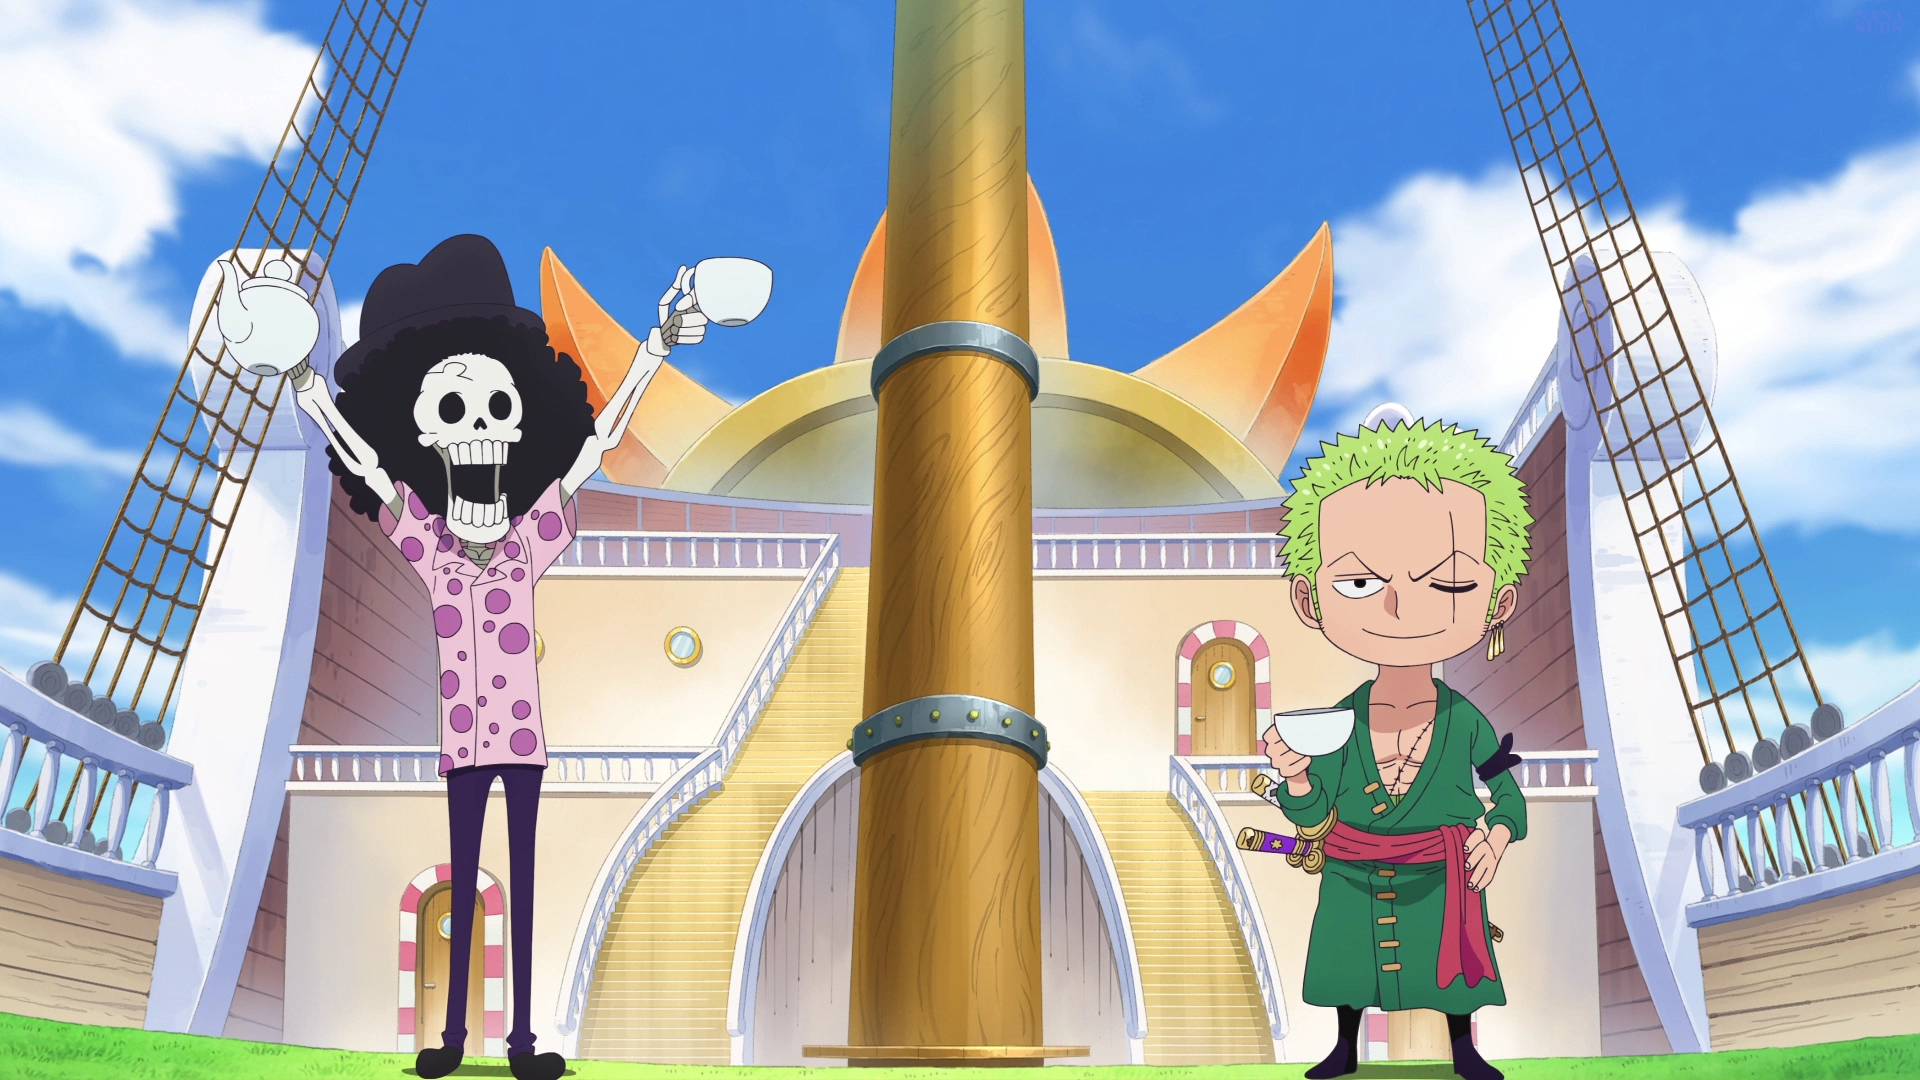 Minaturka 1108.5 odcinka One Piece